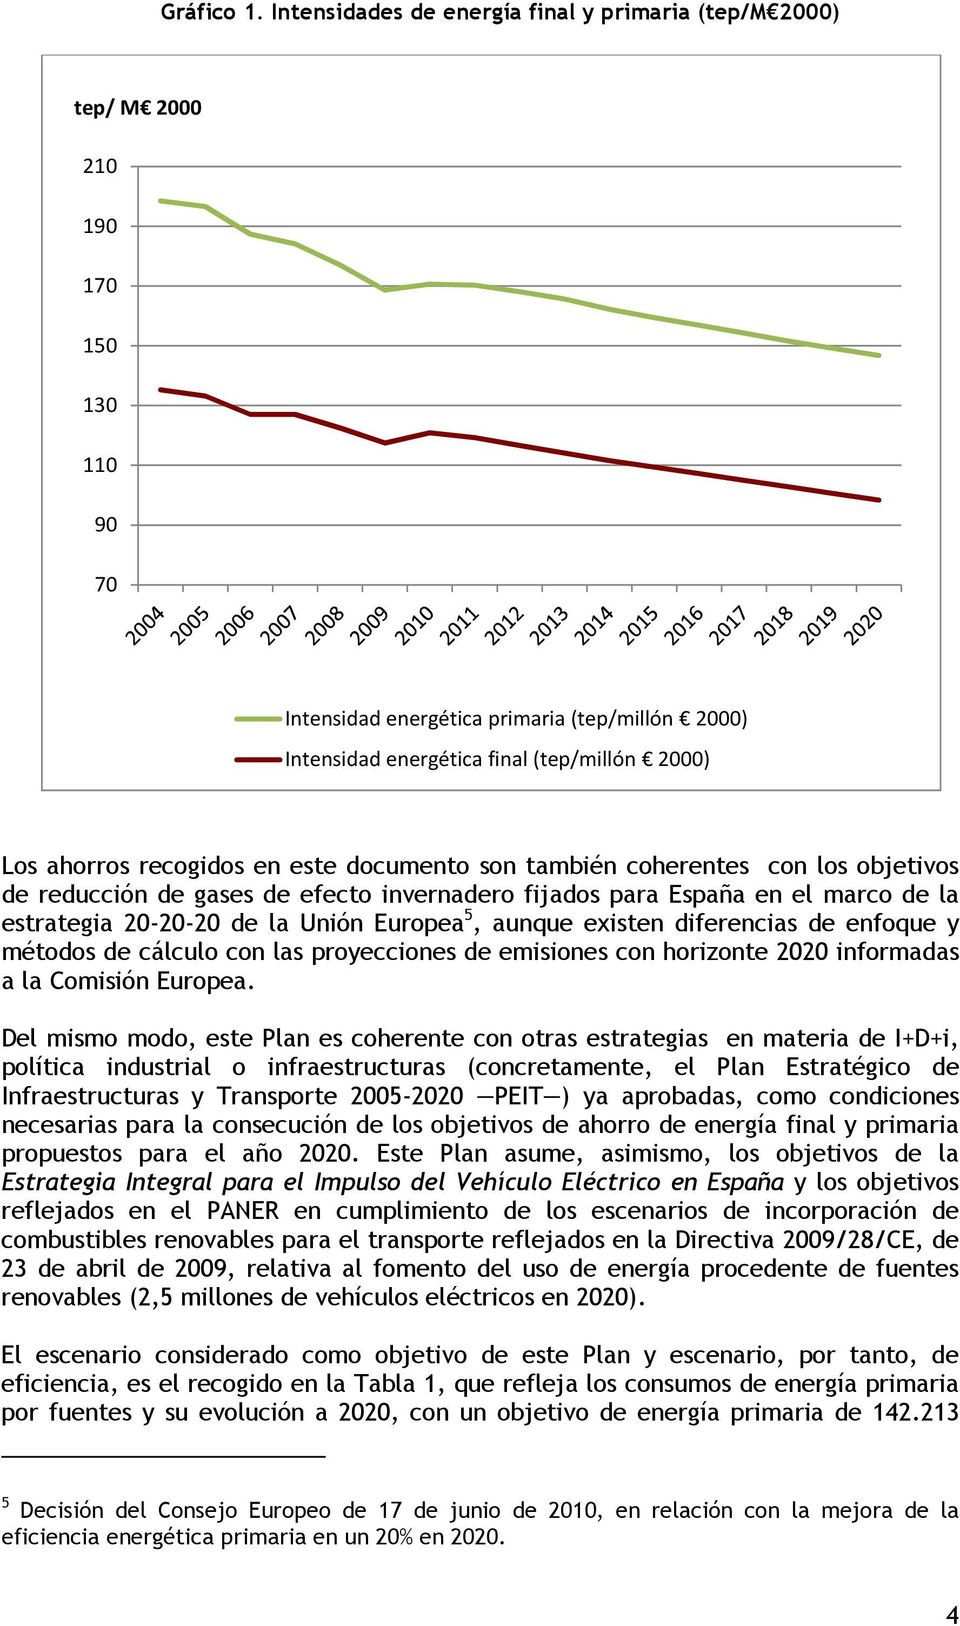 ahorros recogidos en este documento son también coherentes con los objetivos de reducción de gases de efecto invernadero fijados para España en el marco de la estrategia 20-20-20 de la Unión Europea